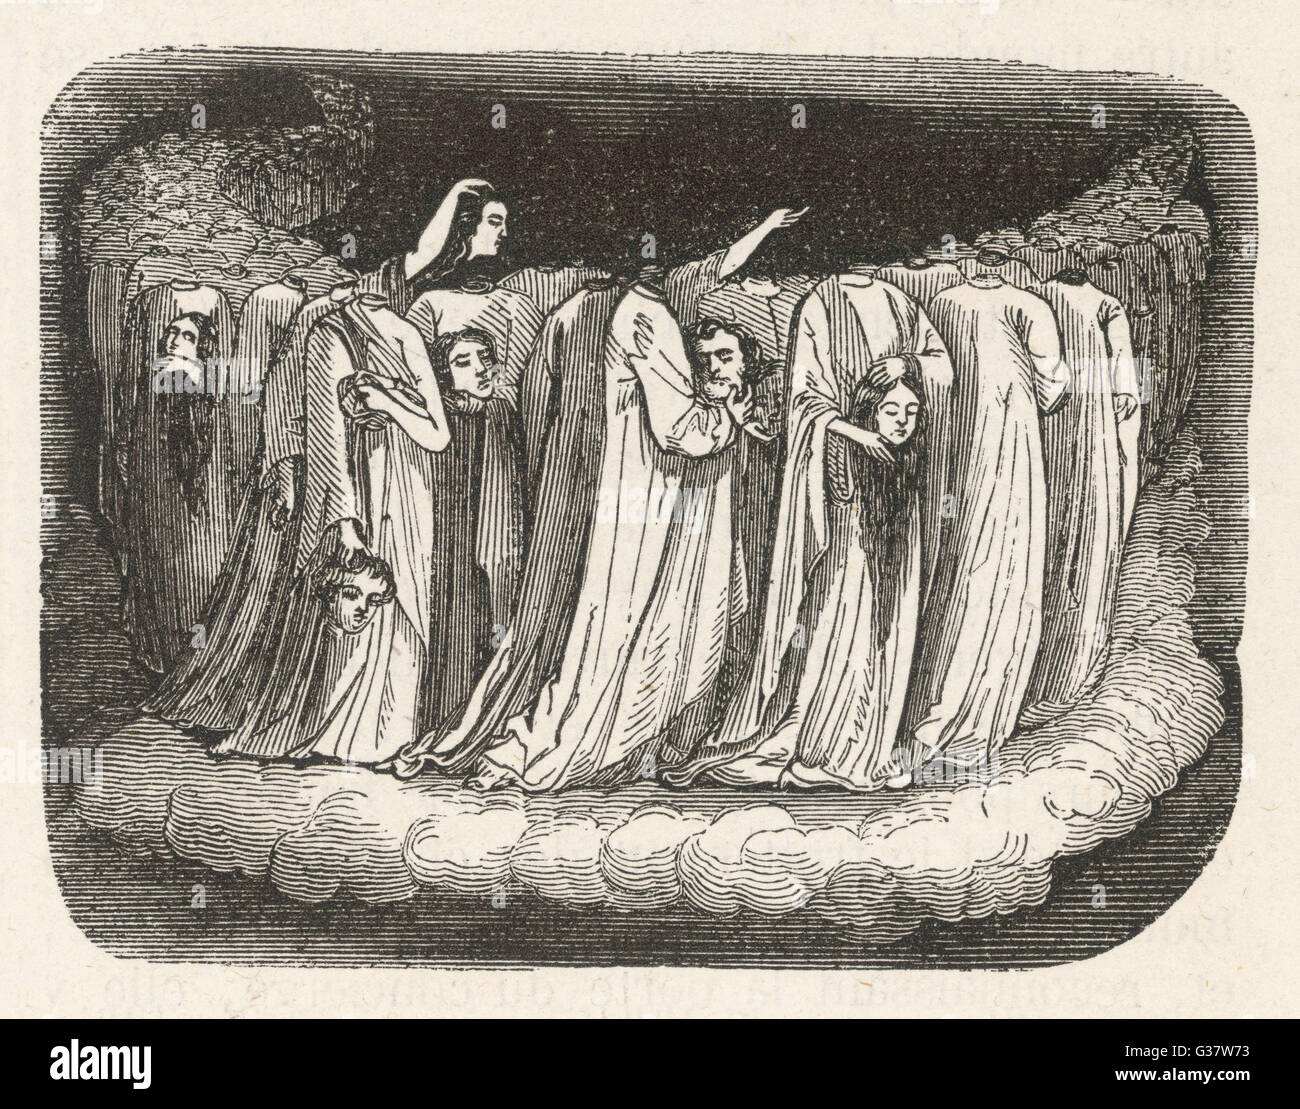 Decapitati i fantasmi di studioso tedesco Camerarius riporta una visione di una processione di fantasmi che trasportano i propri capi data: 1576 Foto Stock